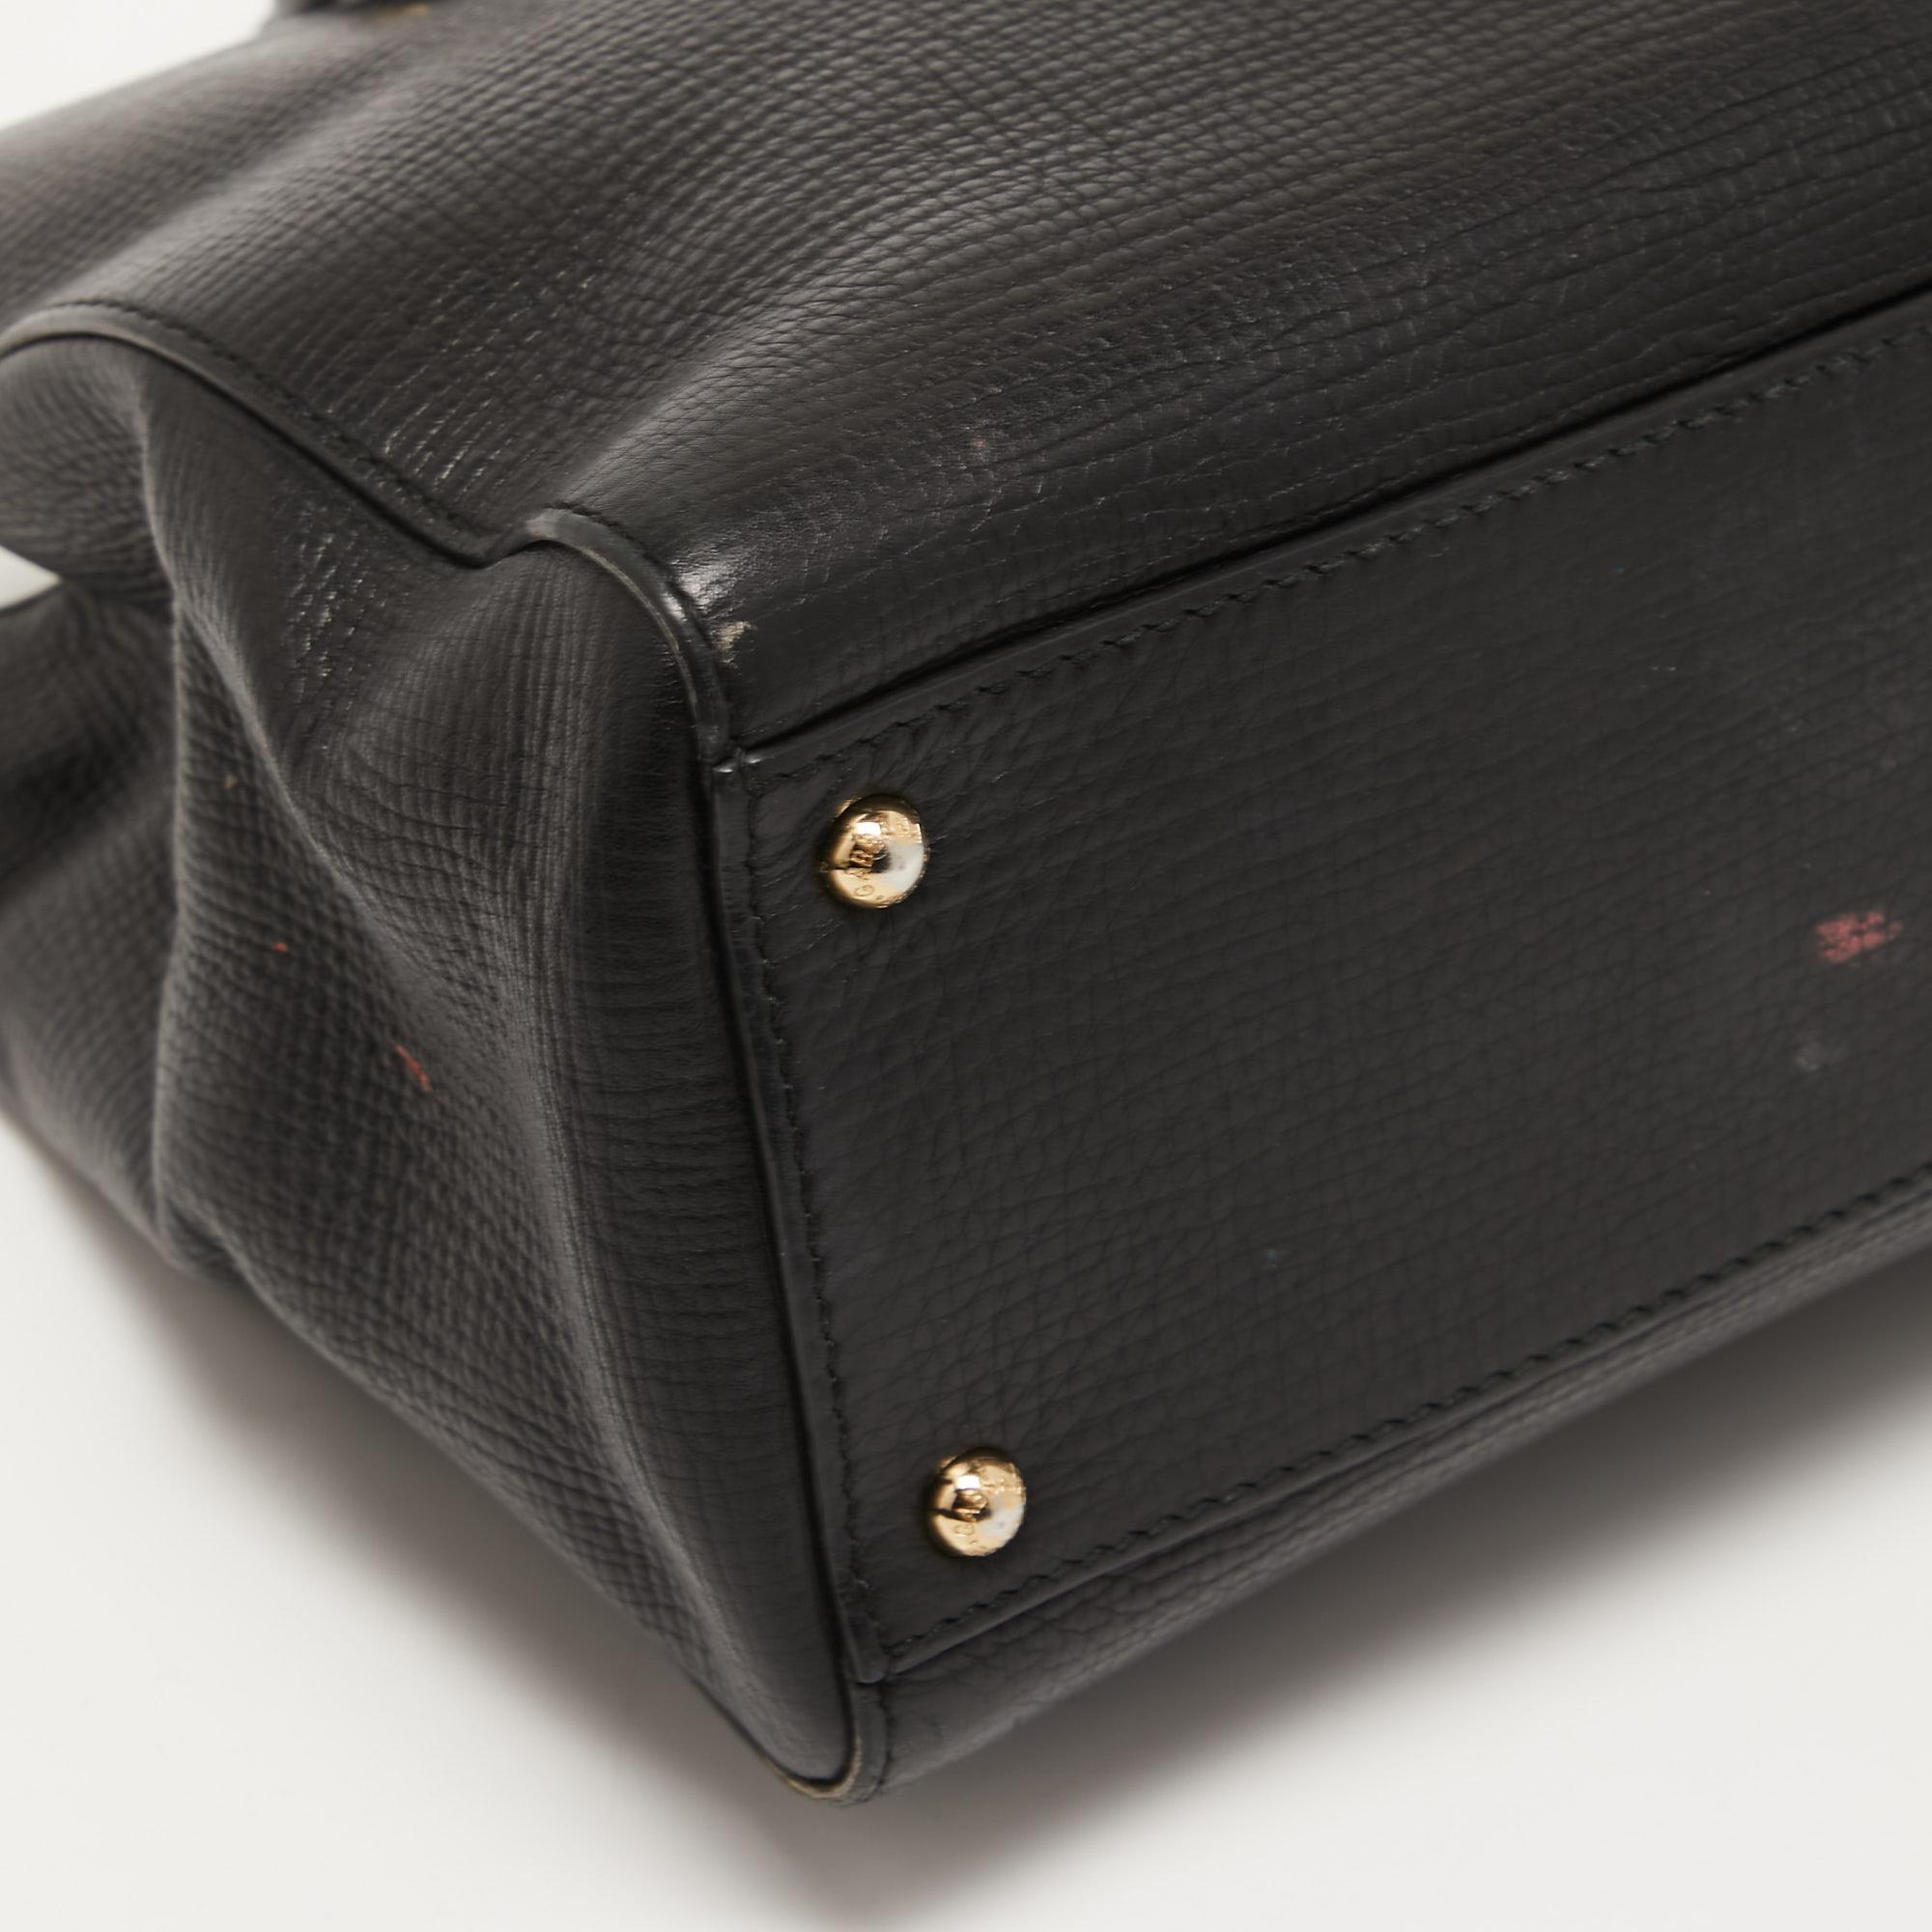 Dolce & Gabbana Black Leather Multi Compartment Tote 4